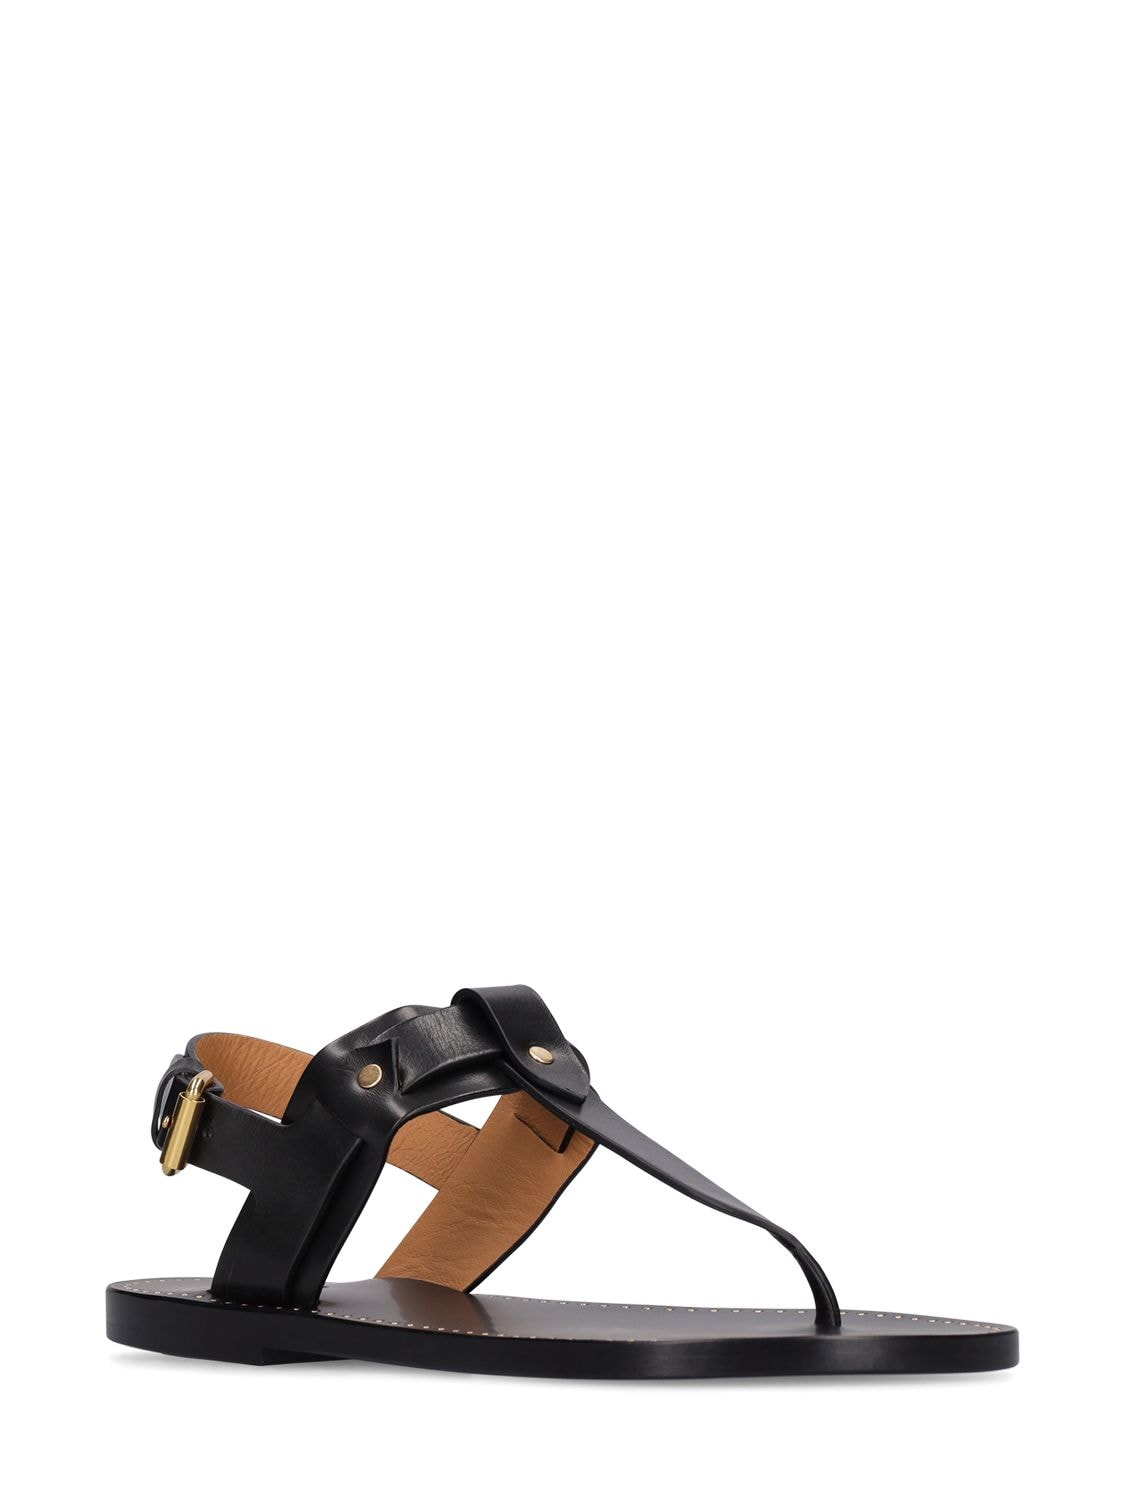 Isabel Marant Jewel Tong Flat Sandals Black | ModeSens